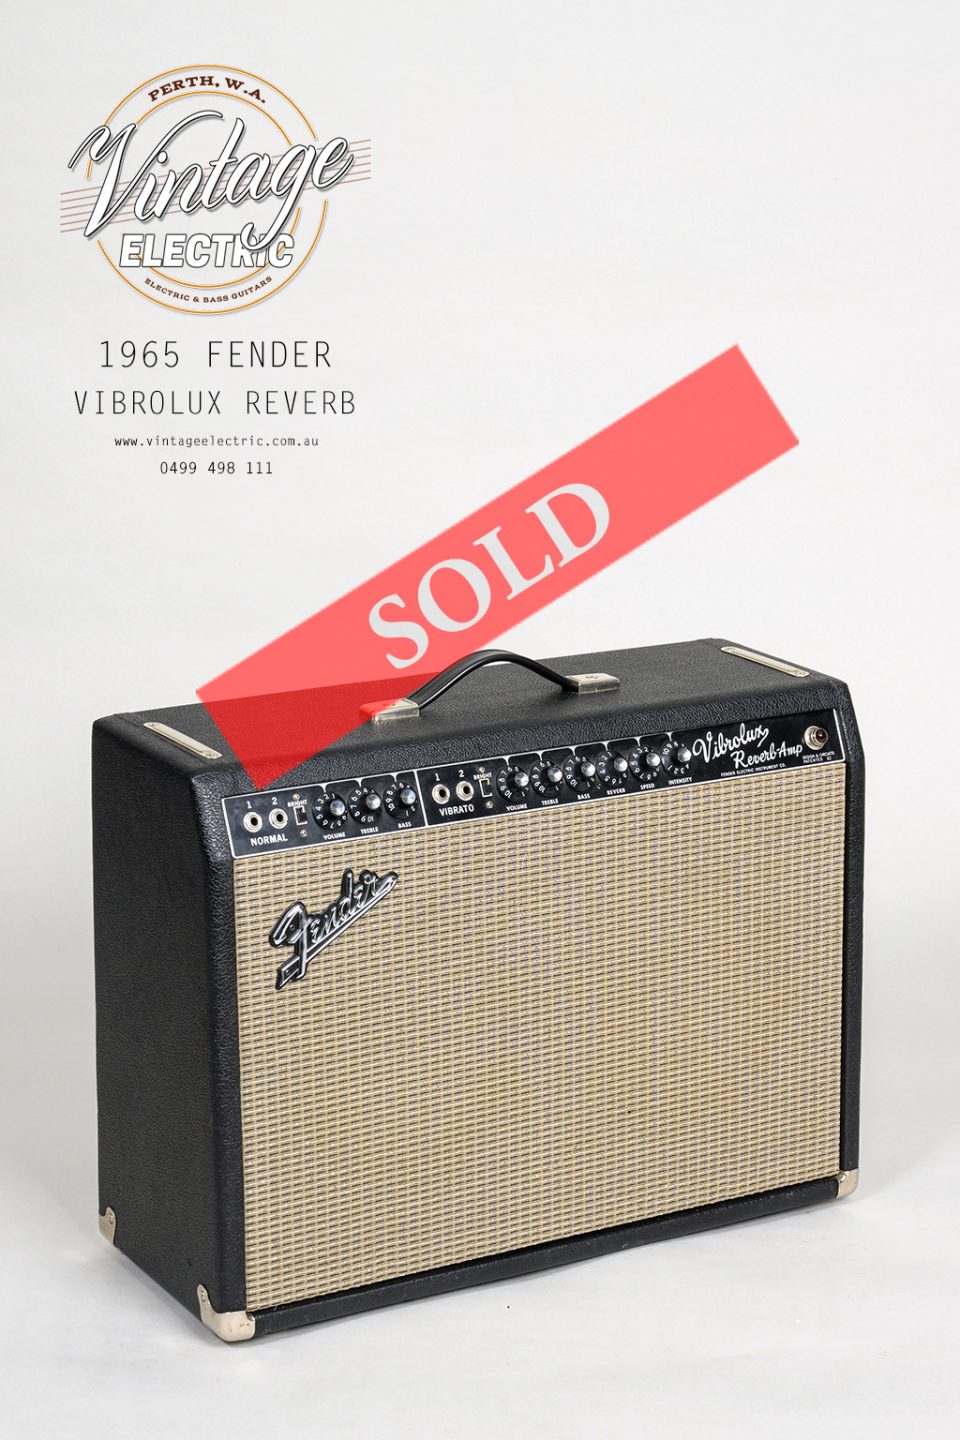 1965 Fender Vibrolux Reverb Mint LARGE SOLD